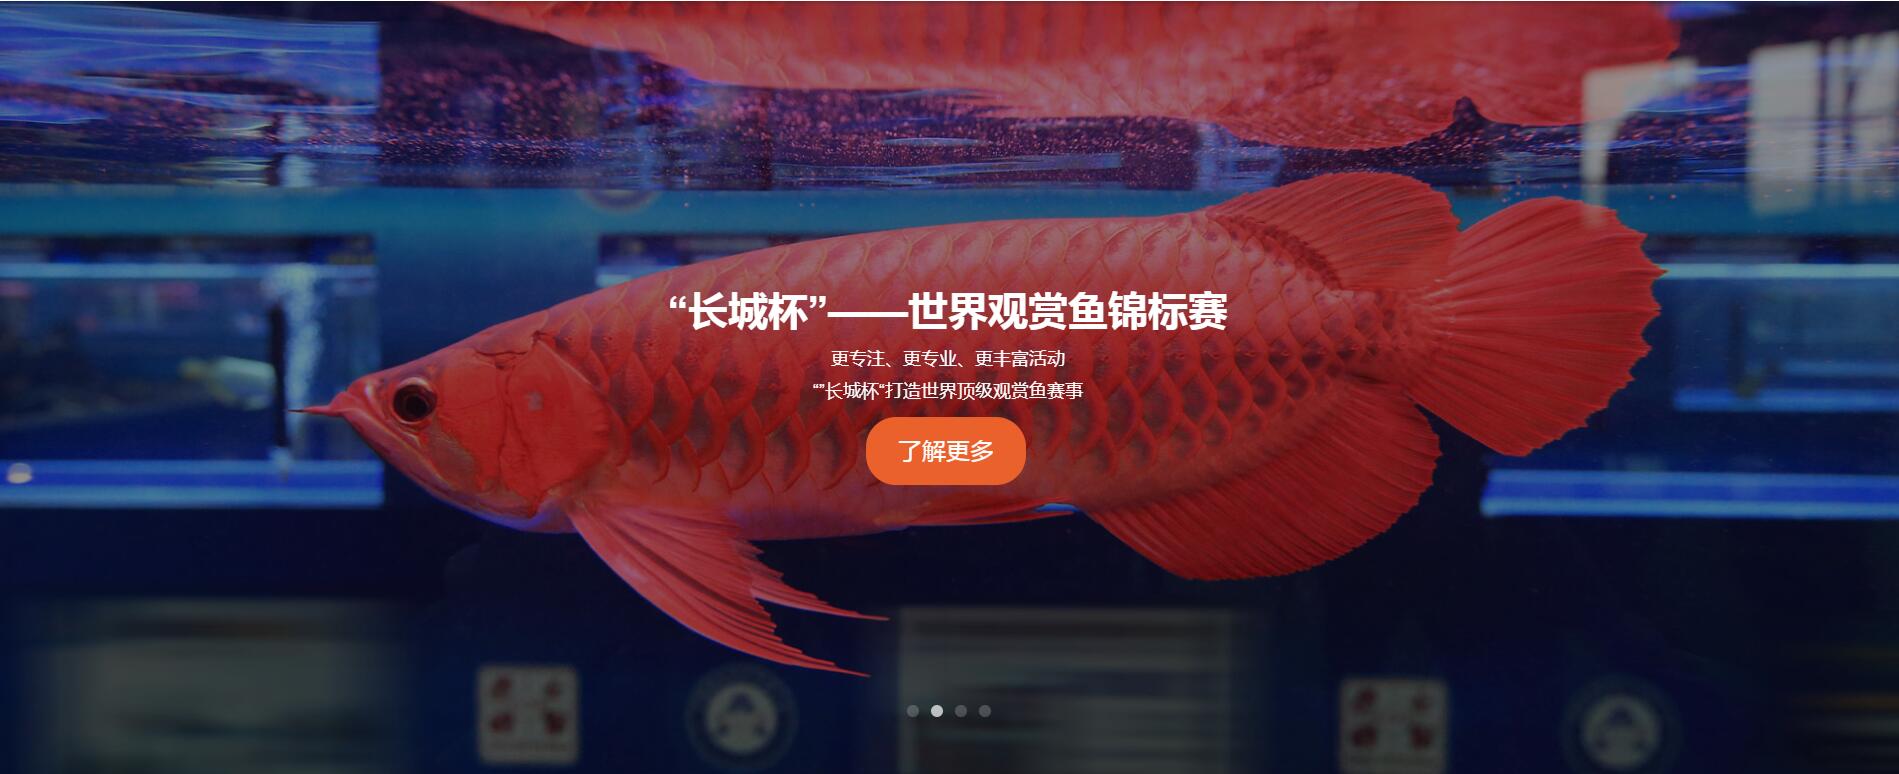 第二十二届中国国际宠物水族展览会(CIPS 2018) 广州水族资讯 花地湾水族批发市场 第1张